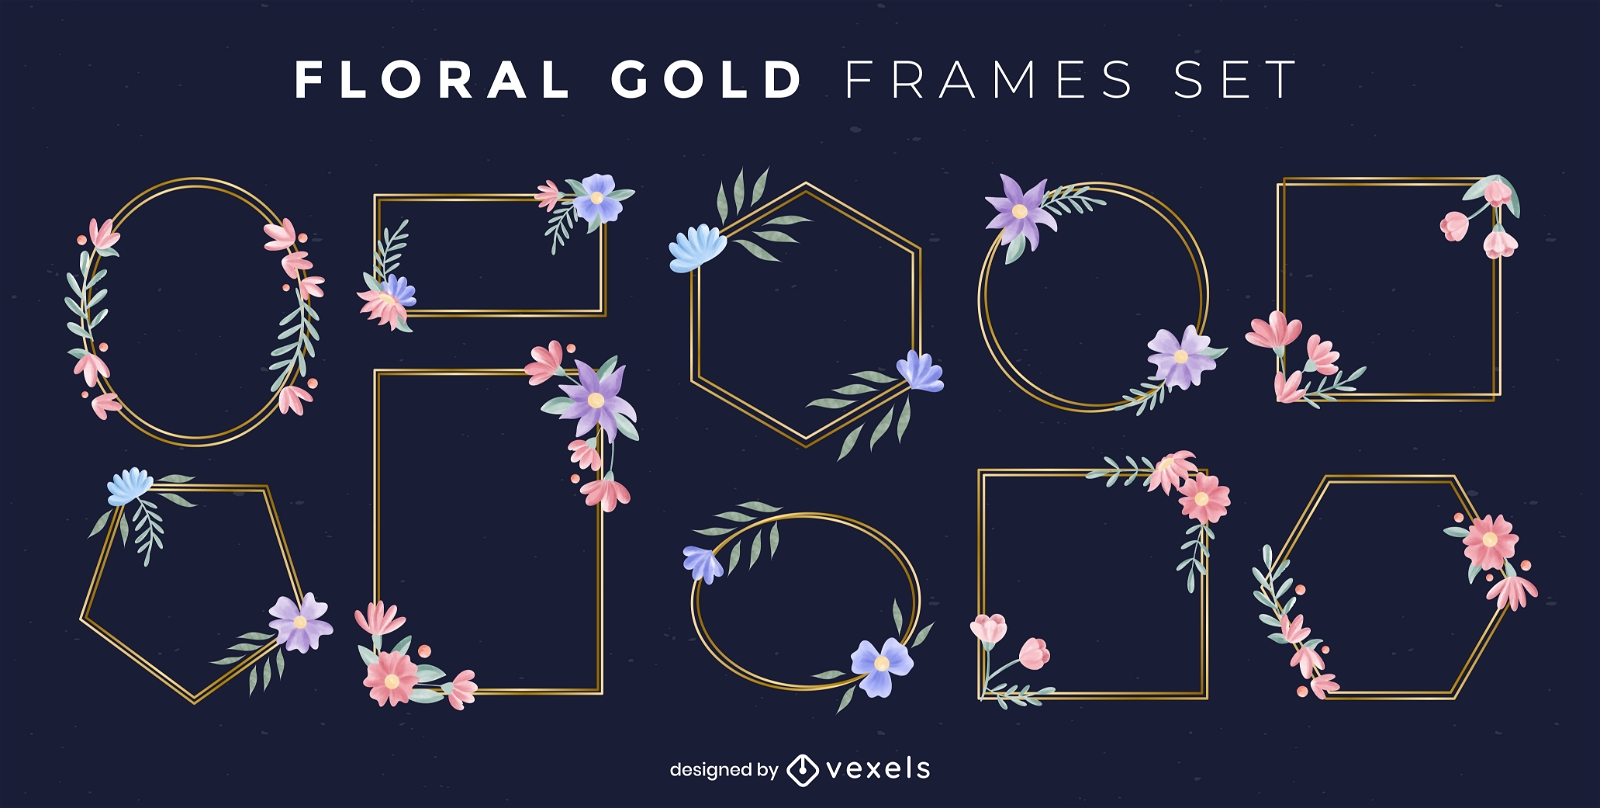 Gold floral frames set